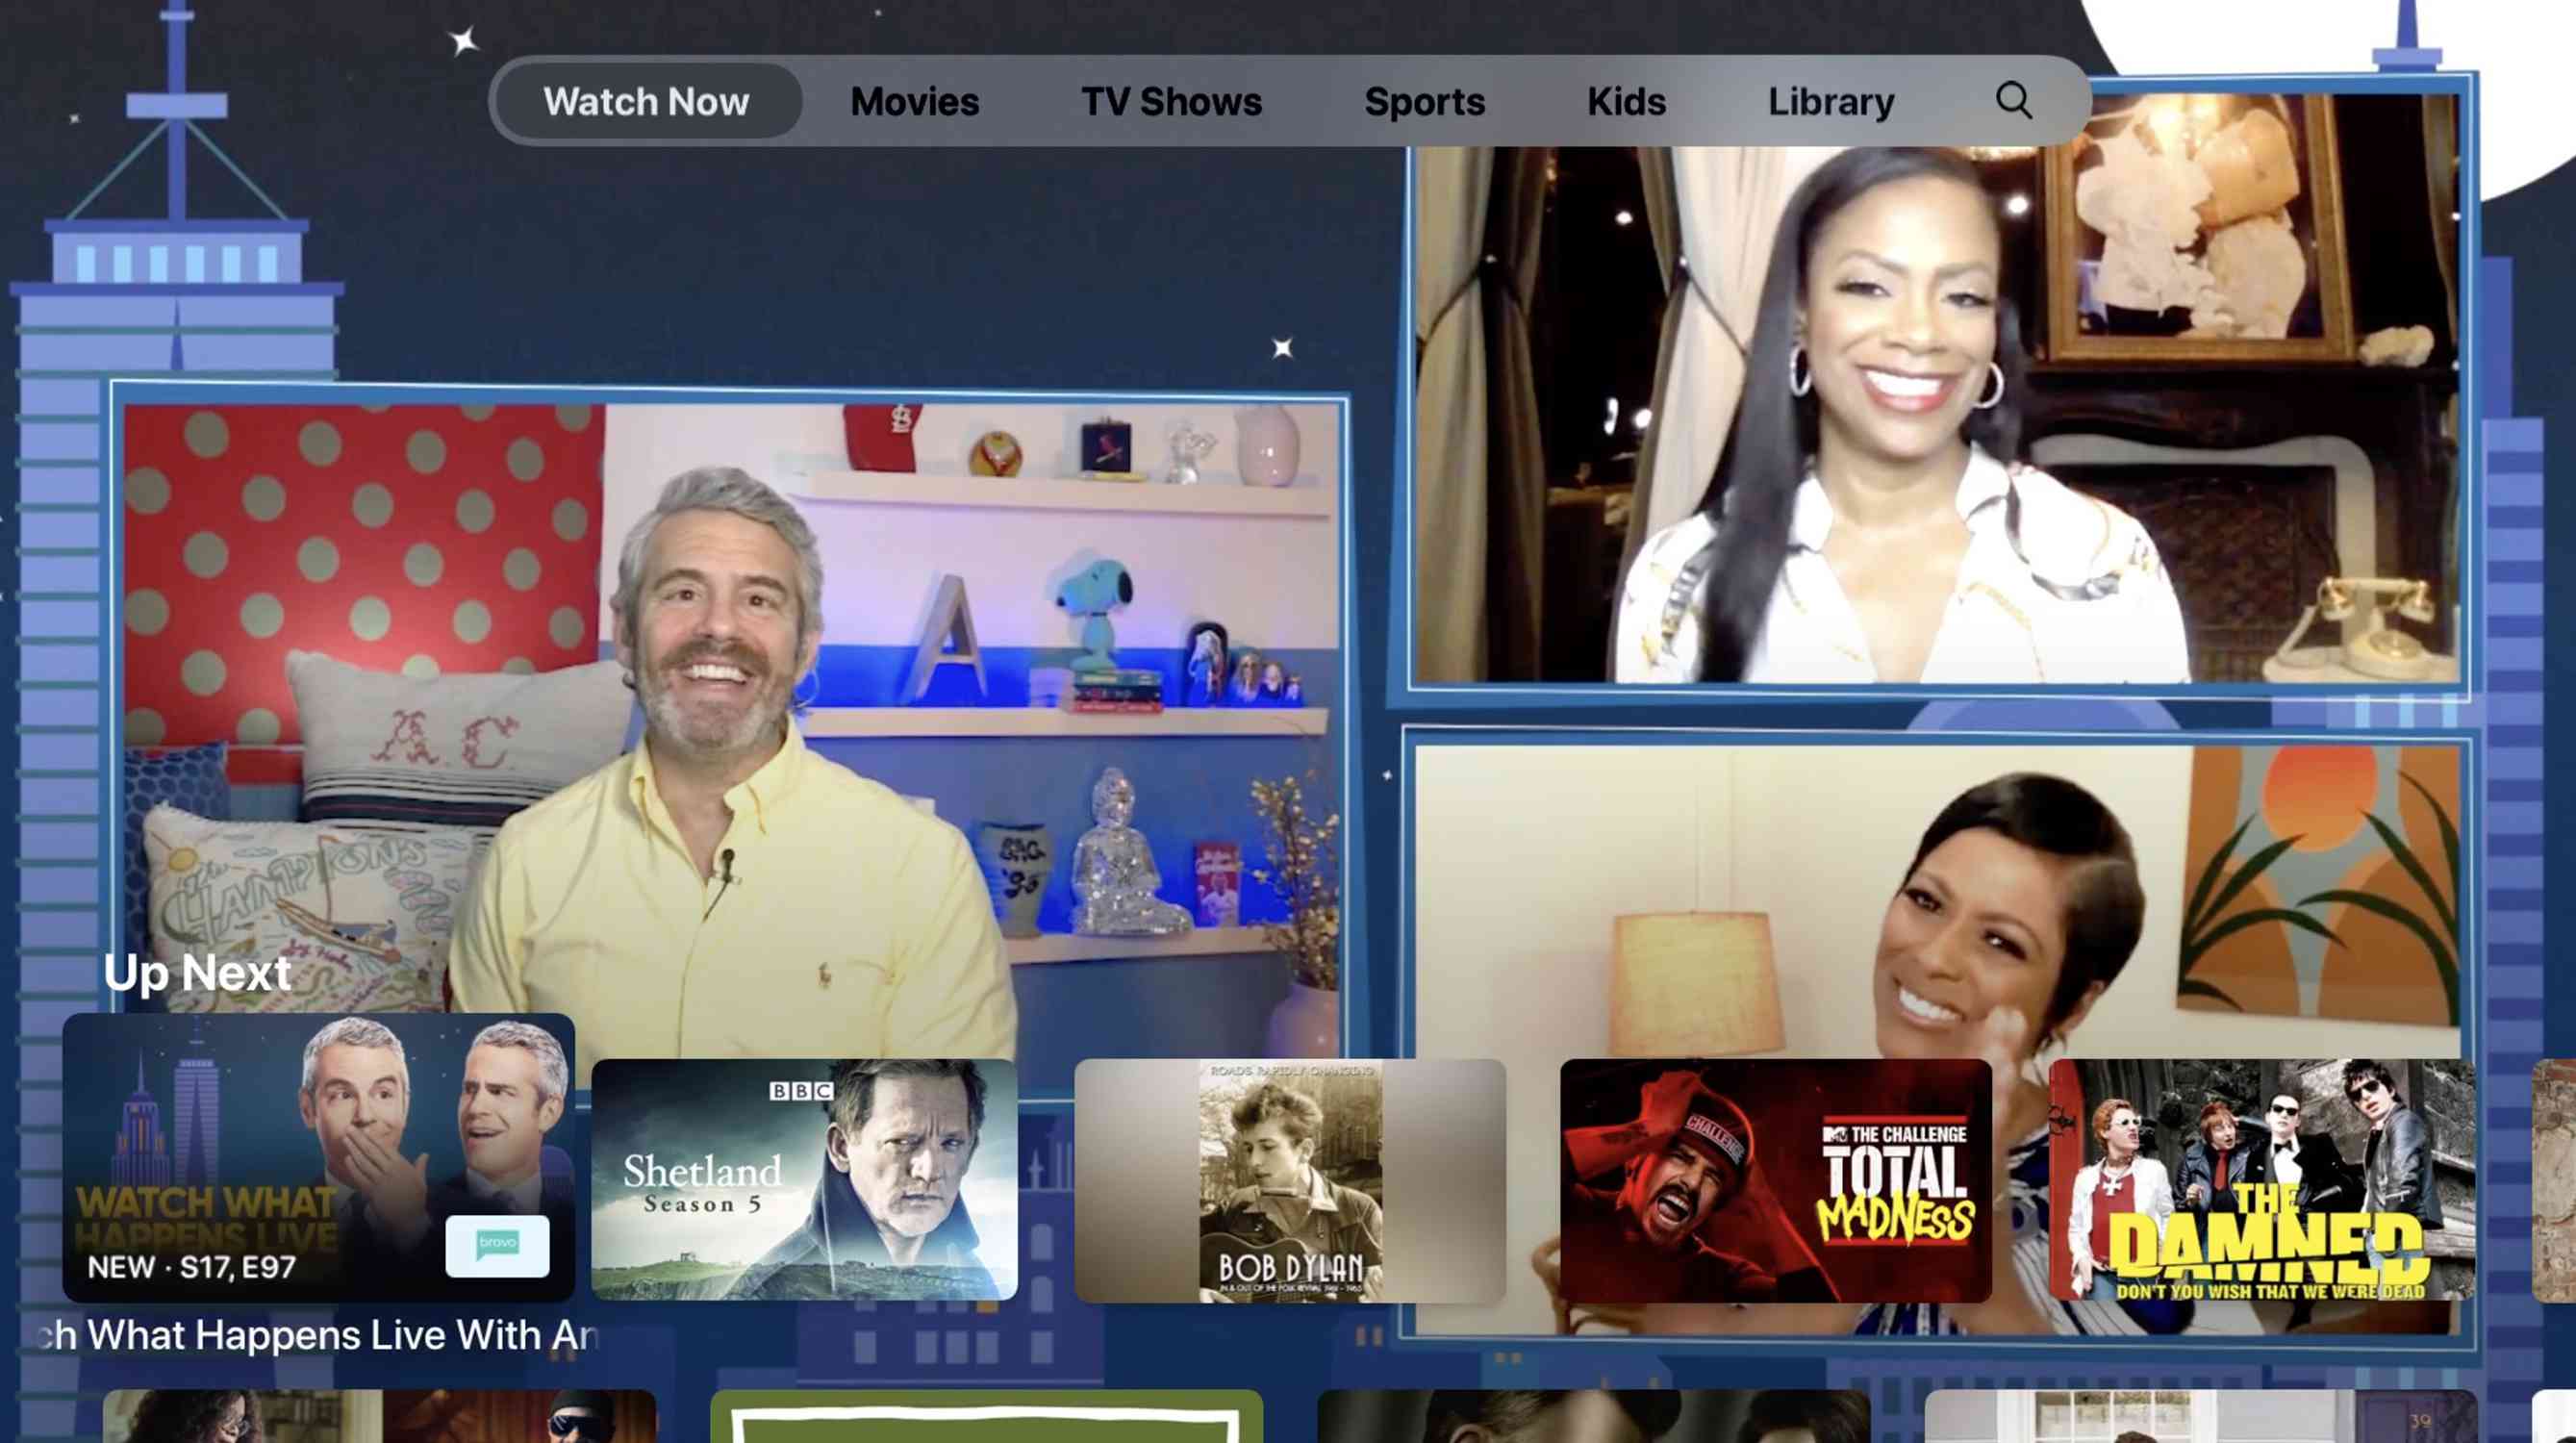 Captura de tela da tela inicial do aplicativo Apple TV